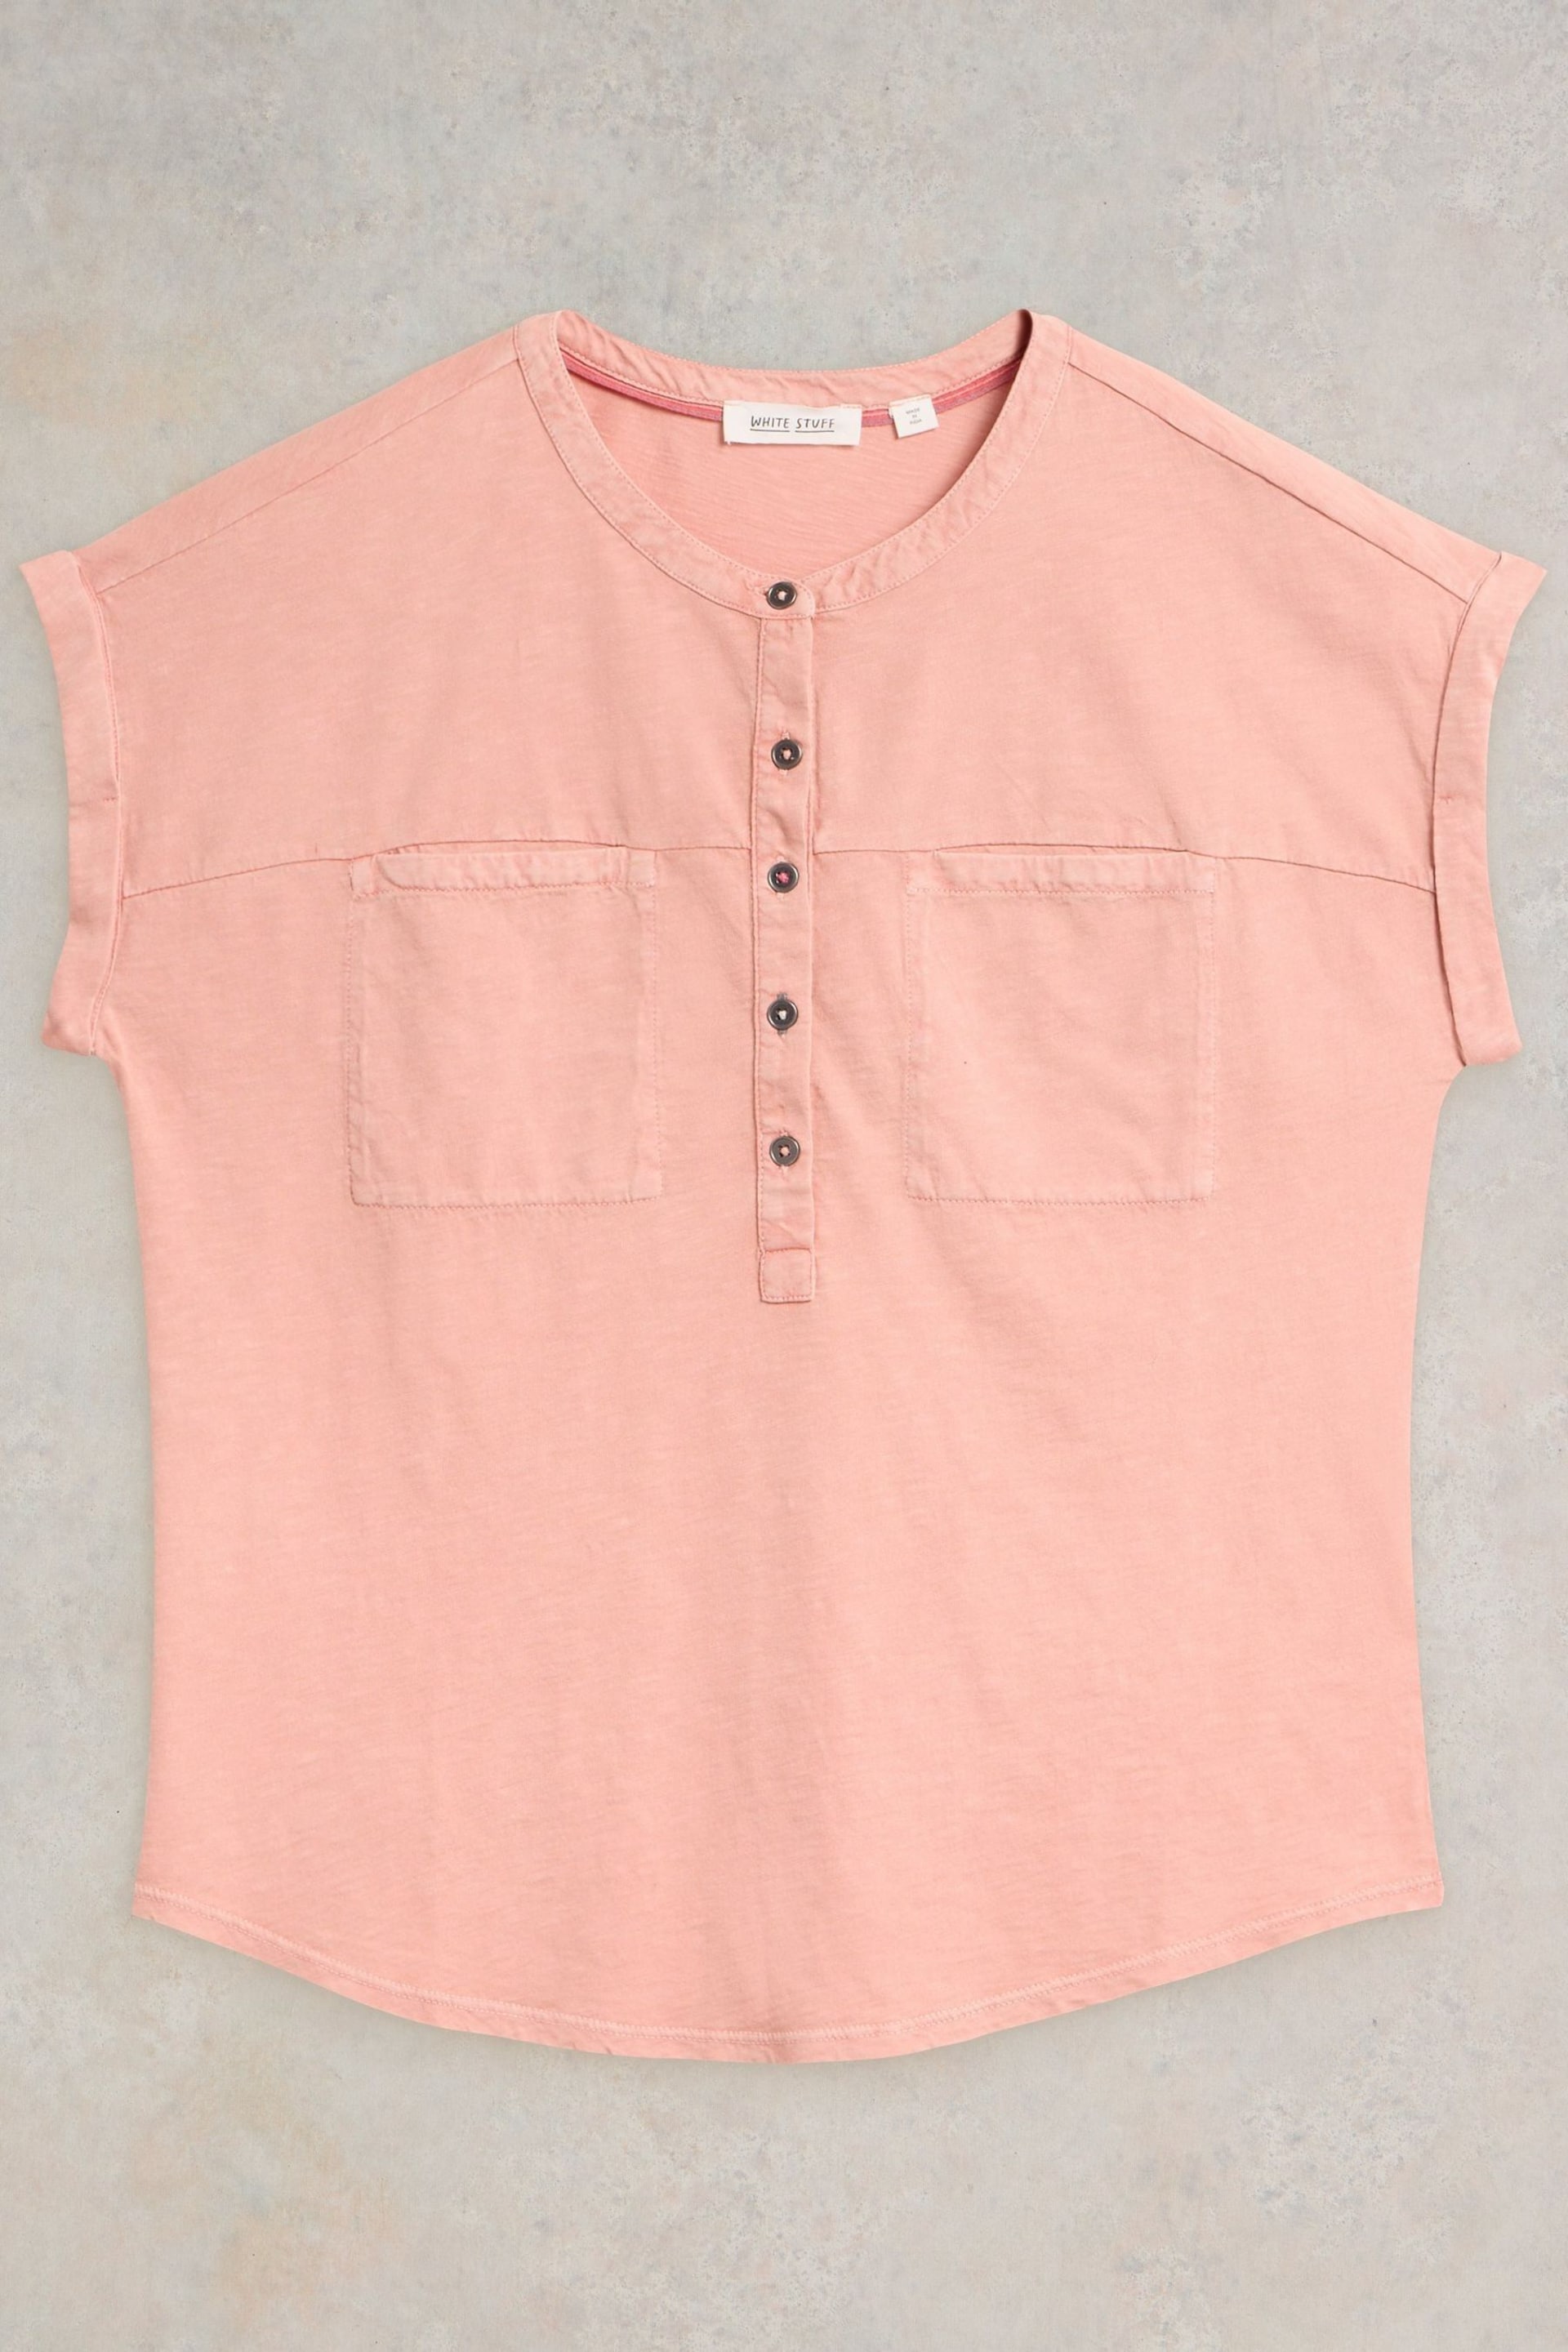 White Stuff Pink Beth Jersey Mix T-Shirt - Image 5 of 7